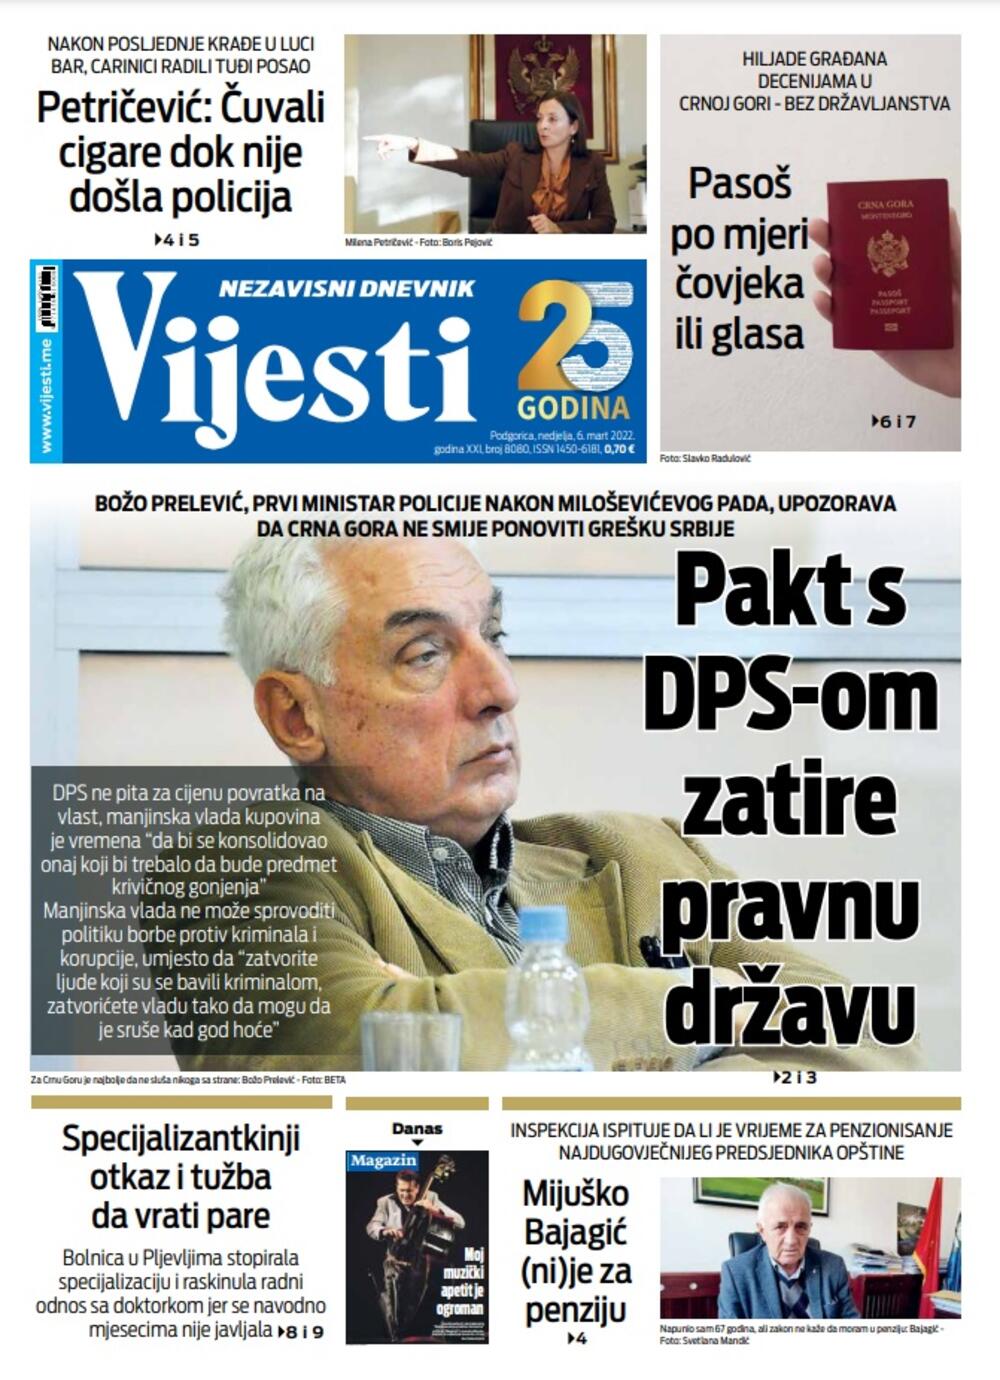 Naslovna strana "Vijesti" za 6. mart 2022., Foto: Vijesti